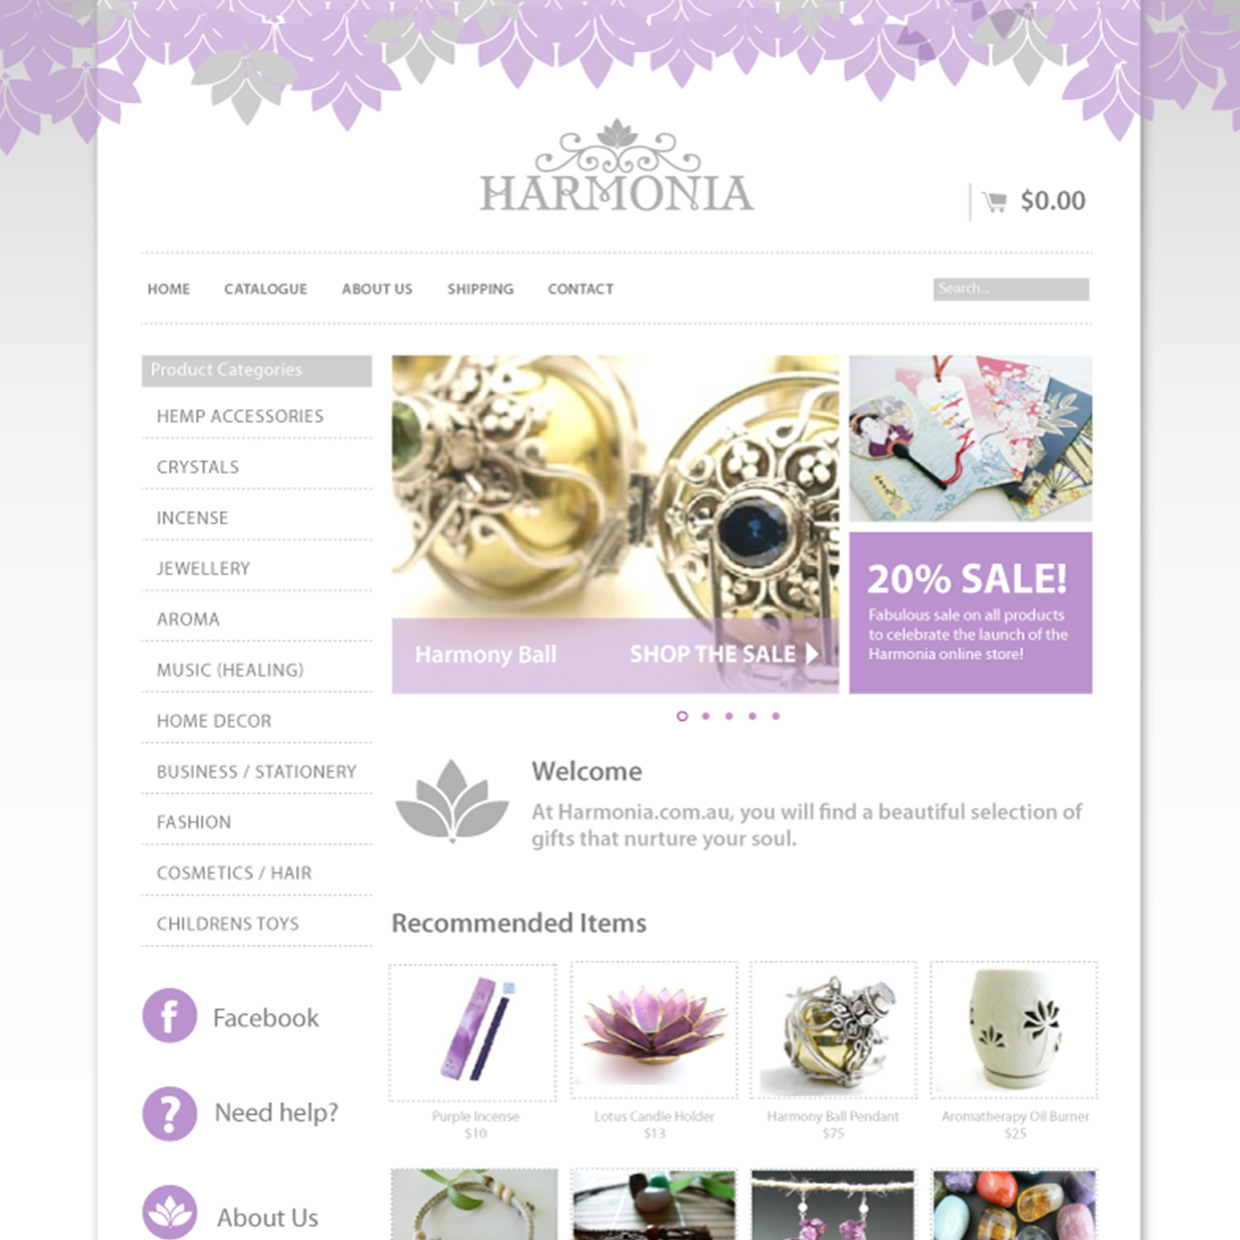 Harmonia website design by Frances Verbeek